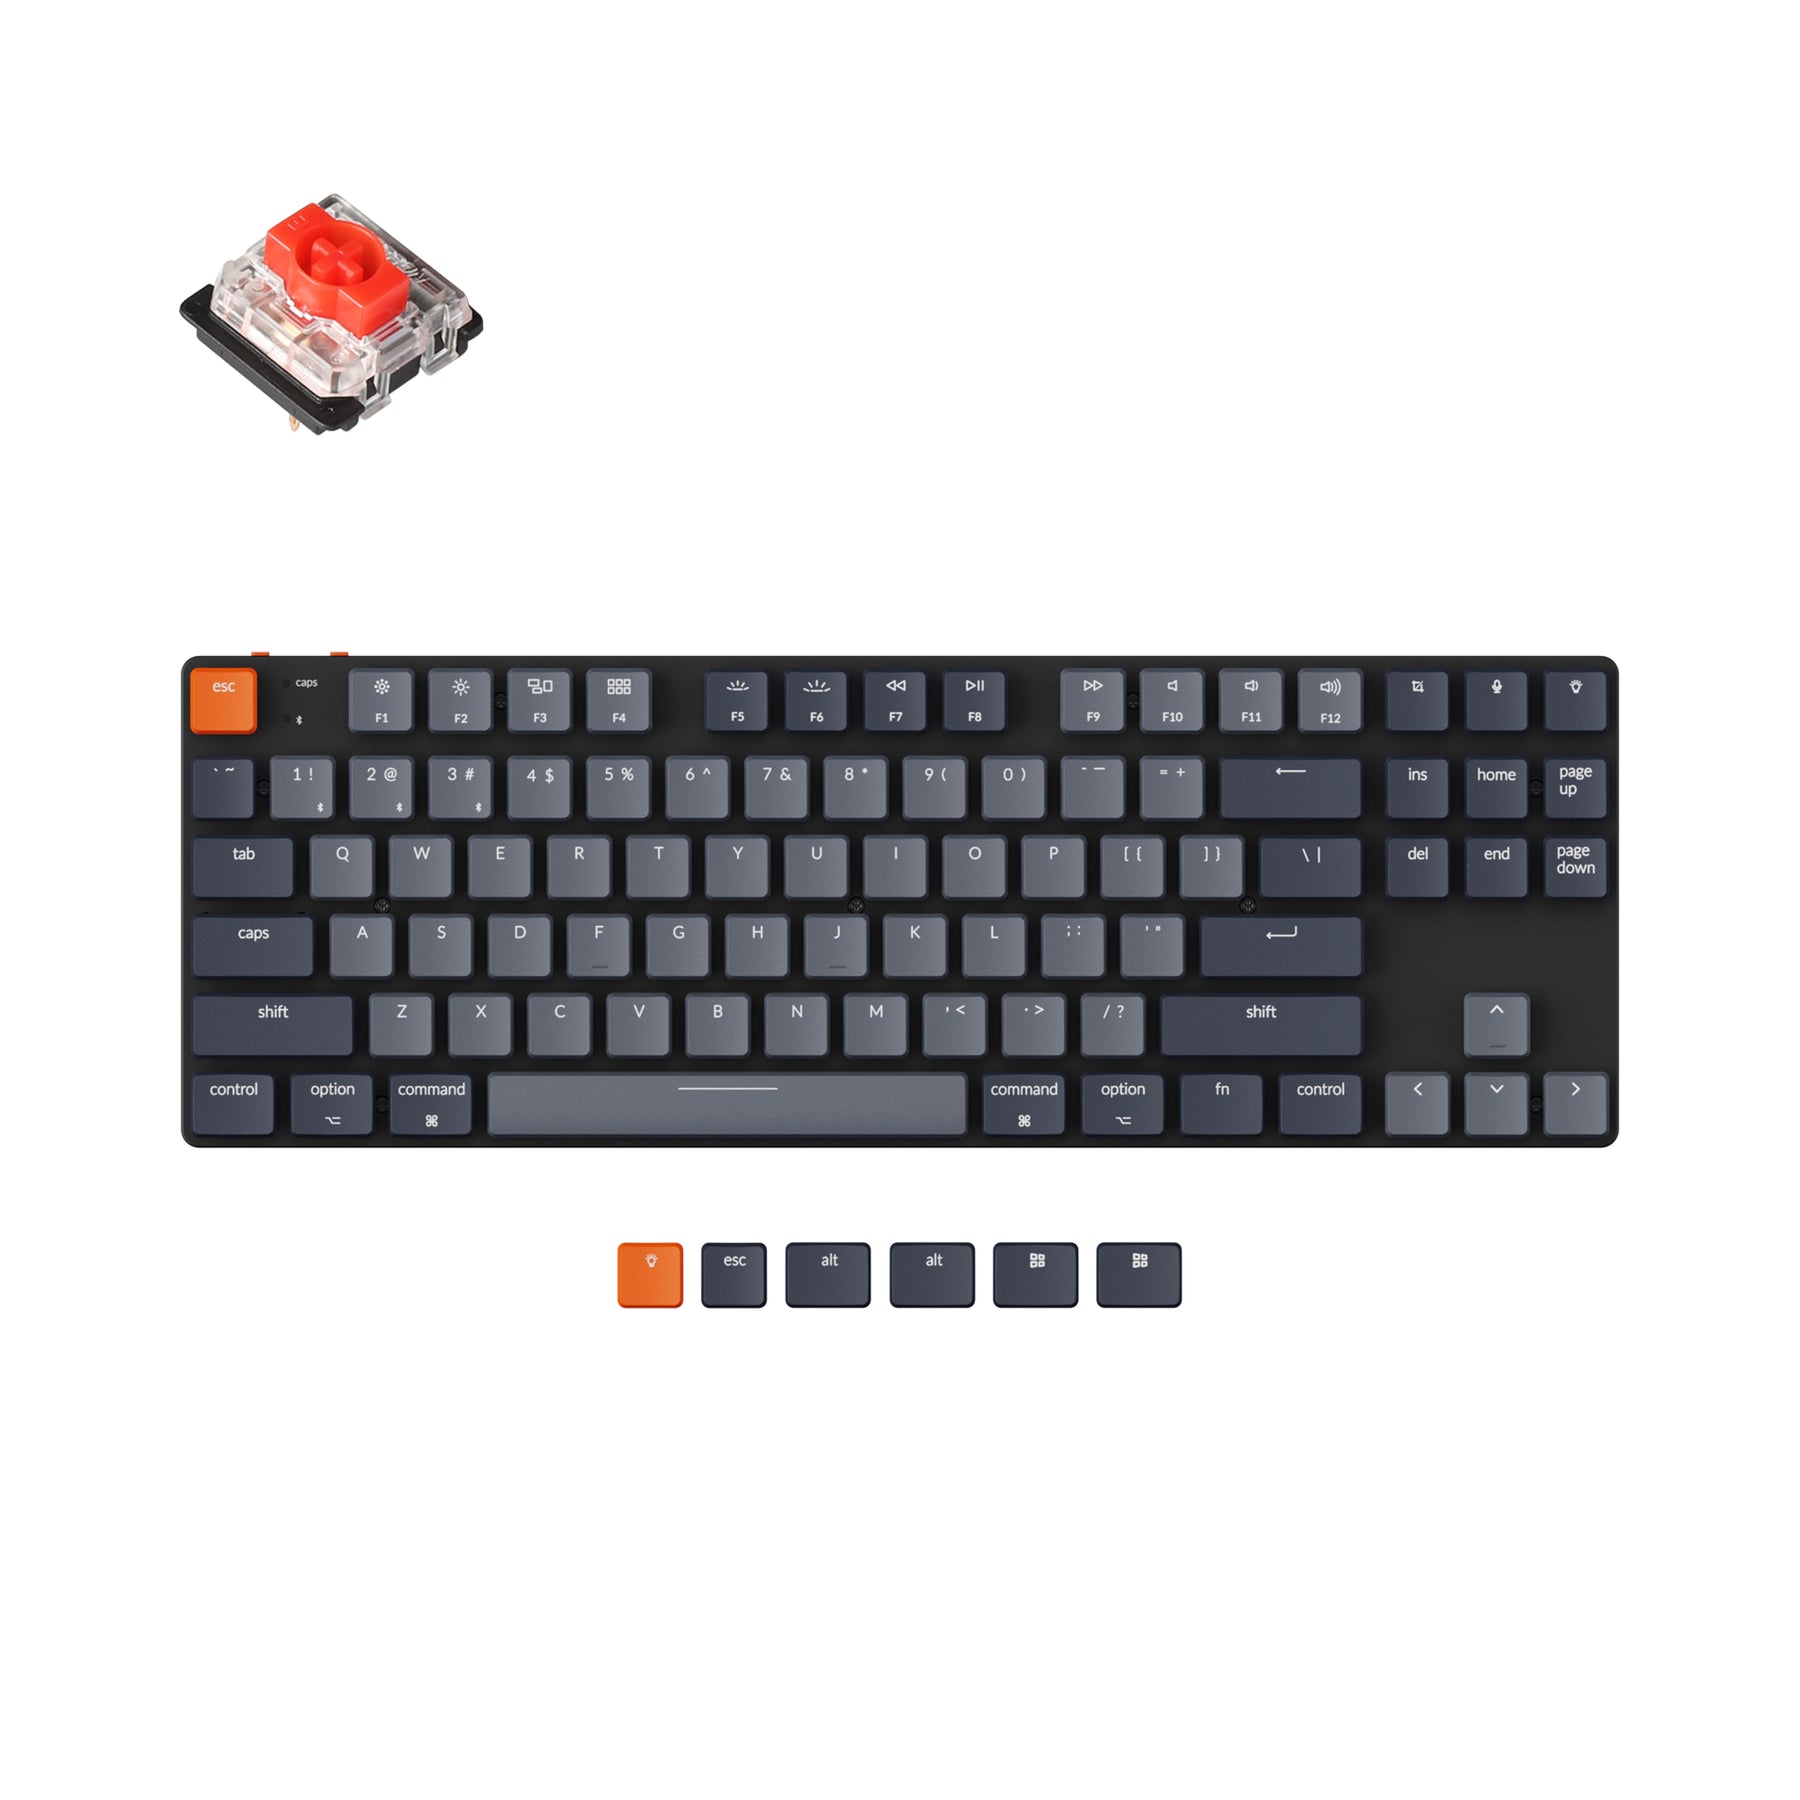 Keychron K1 SE kabellose mechanische Tastatur (US ANSI Layout)